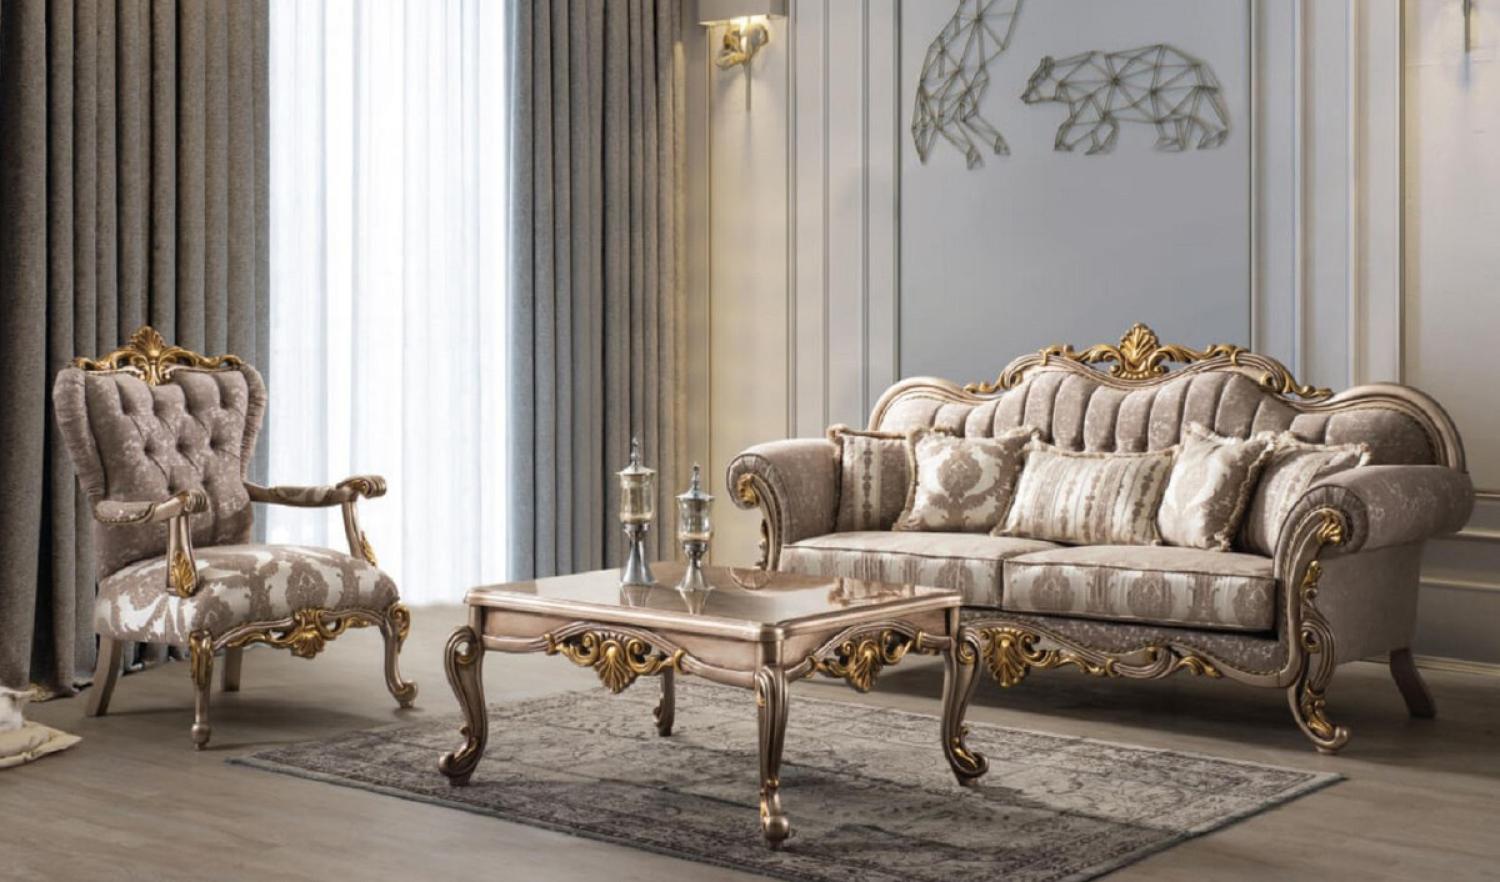 Casa Padrino Luxus Barock Wohnzimmer Set Grau / Silbergrau / Gold - 2 Sofas & 2 Sessel & 1 Couchtisch - Handgefertigte Wohnzimmer Möbel im Barockstil - Edel & Prunkvoll Bild 1